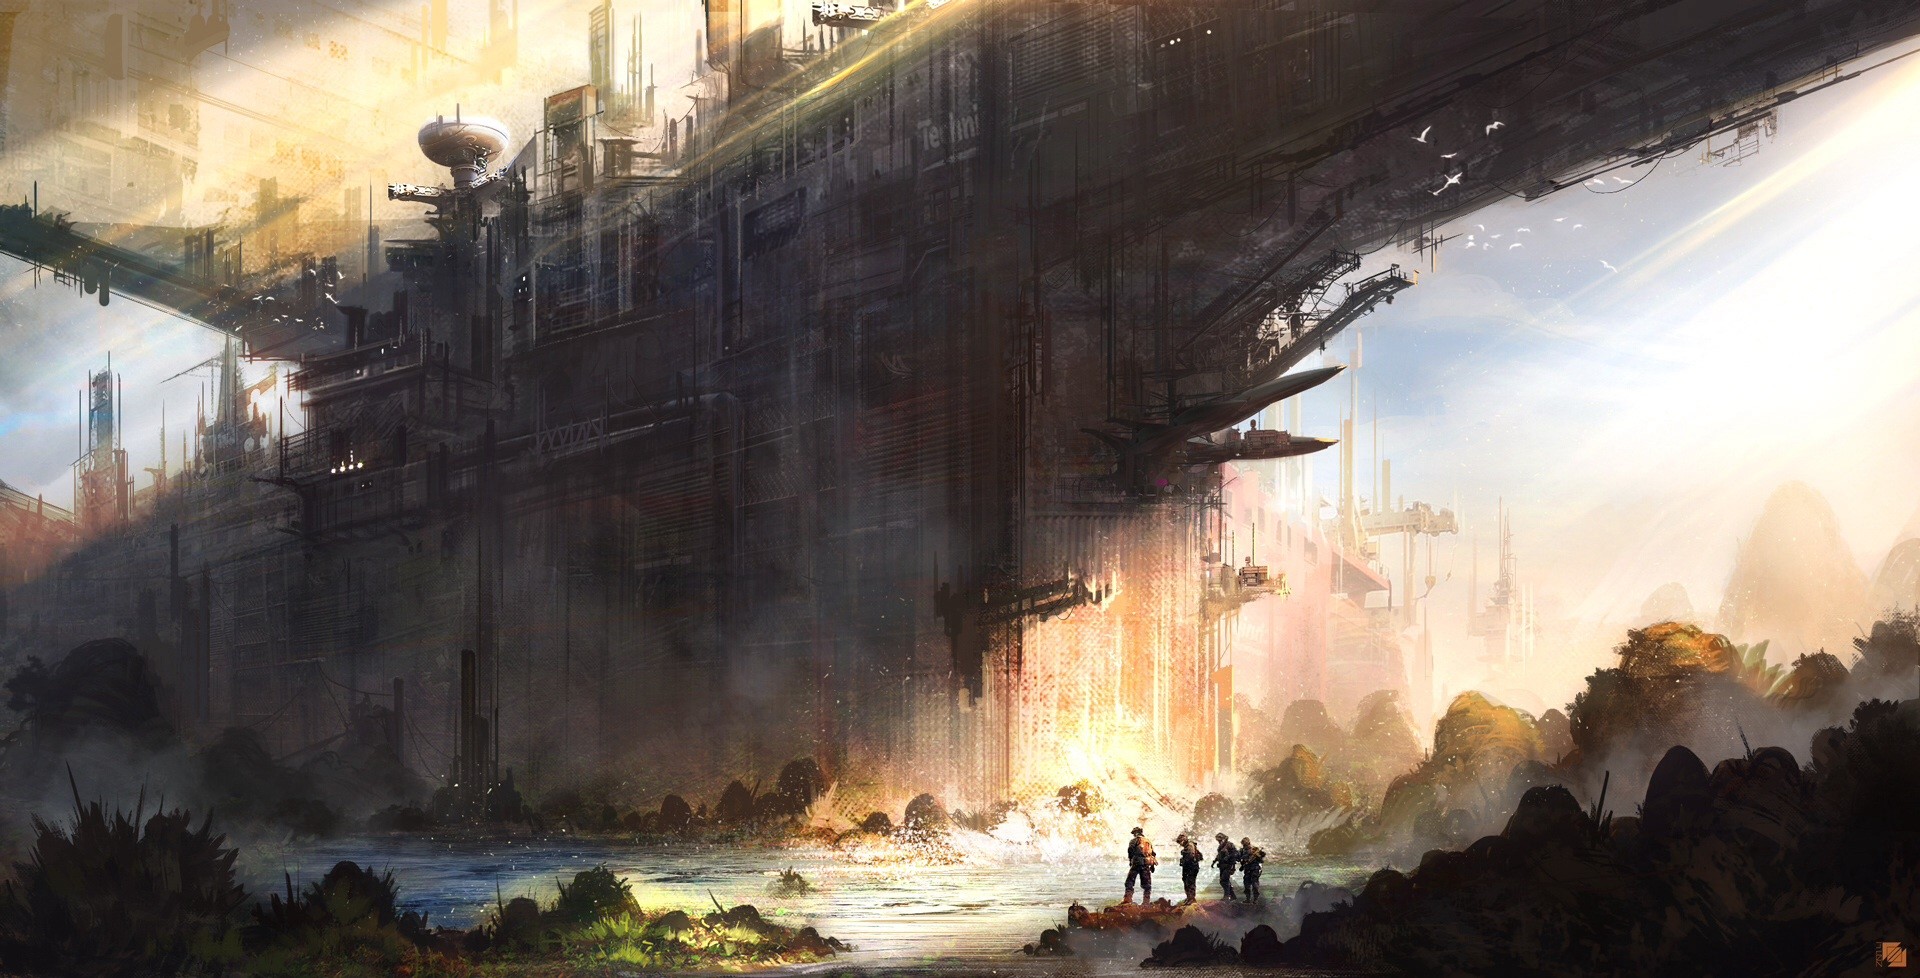 General 1920x978 science fiction futuristic city cityscape artwork